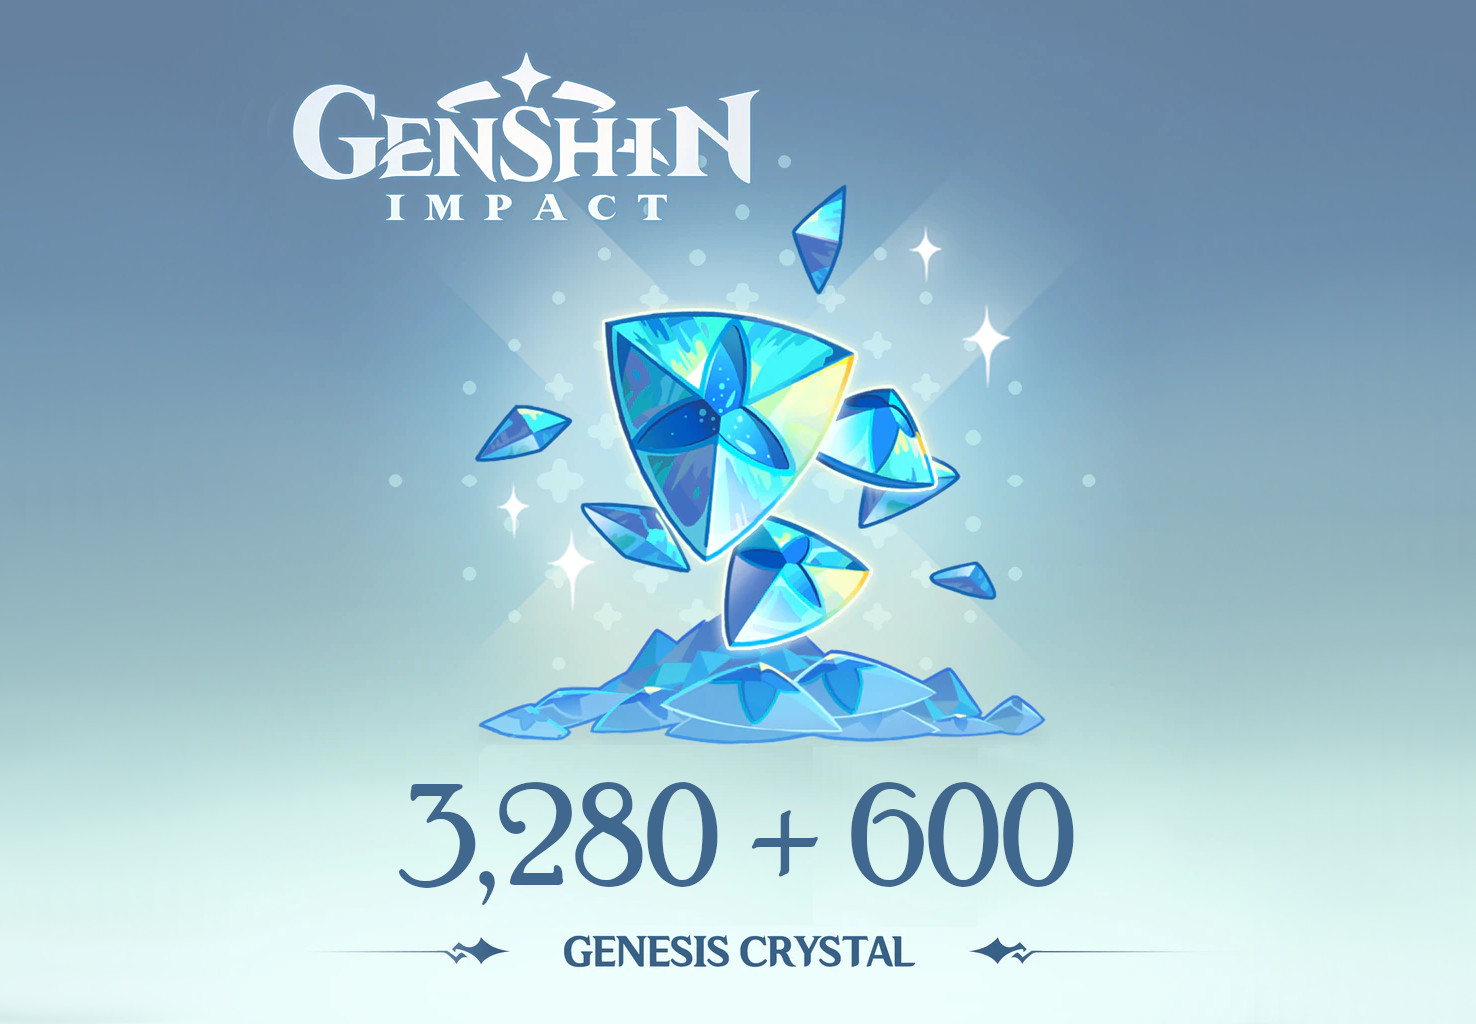 Genshin Impact - 3,280 + 600 Genesis Crystals Reidos Voucher 53.39 $